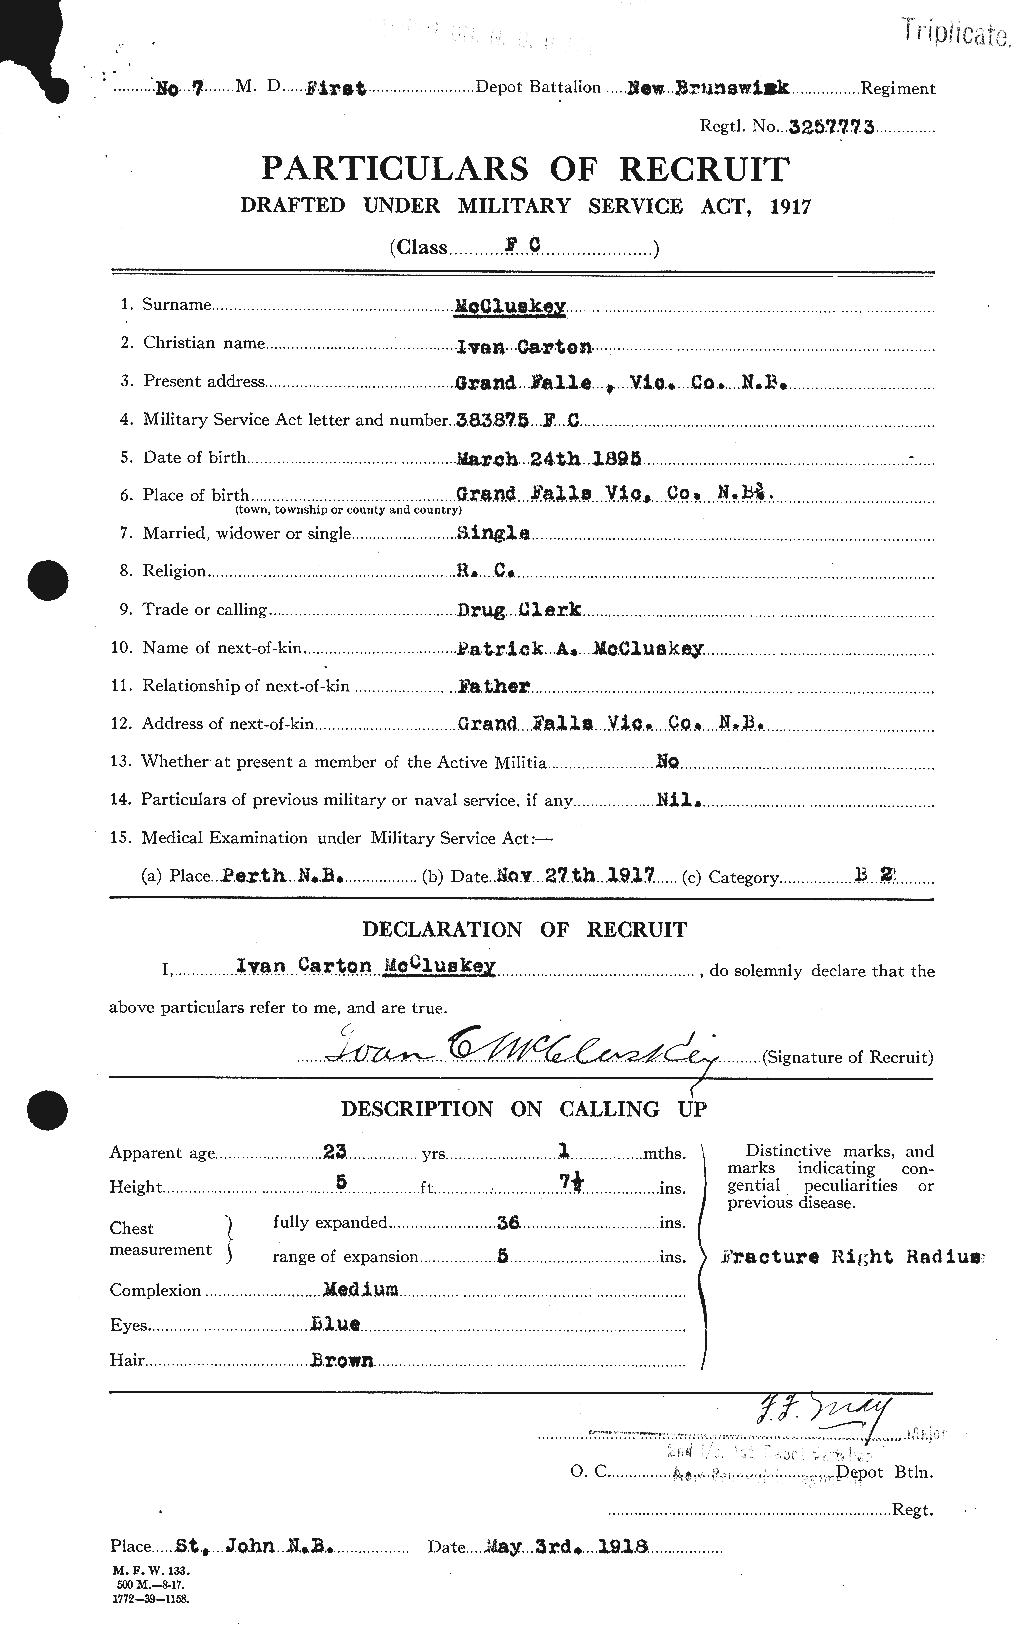 Dossiers du Personnel de la Première Guerre mondiale - CEC 133651a